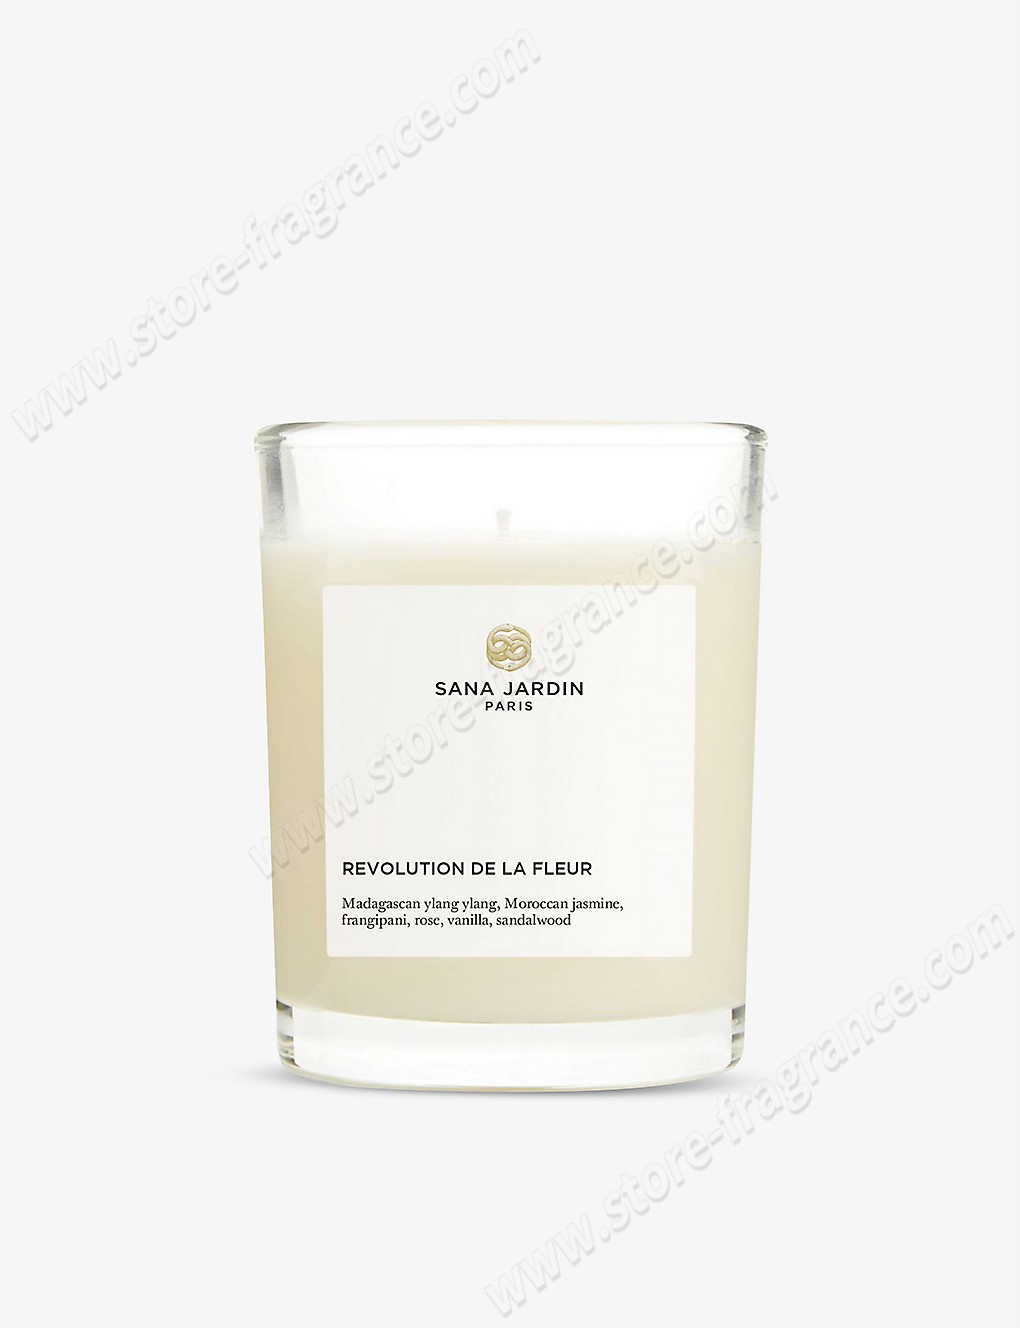 SANA JARDIN/Revolution De La Fleur scented candle 190g ✿ Discount Store - SANA JARDIN/Revolution De La Fleur scented candle 190g ✿ Discount Store